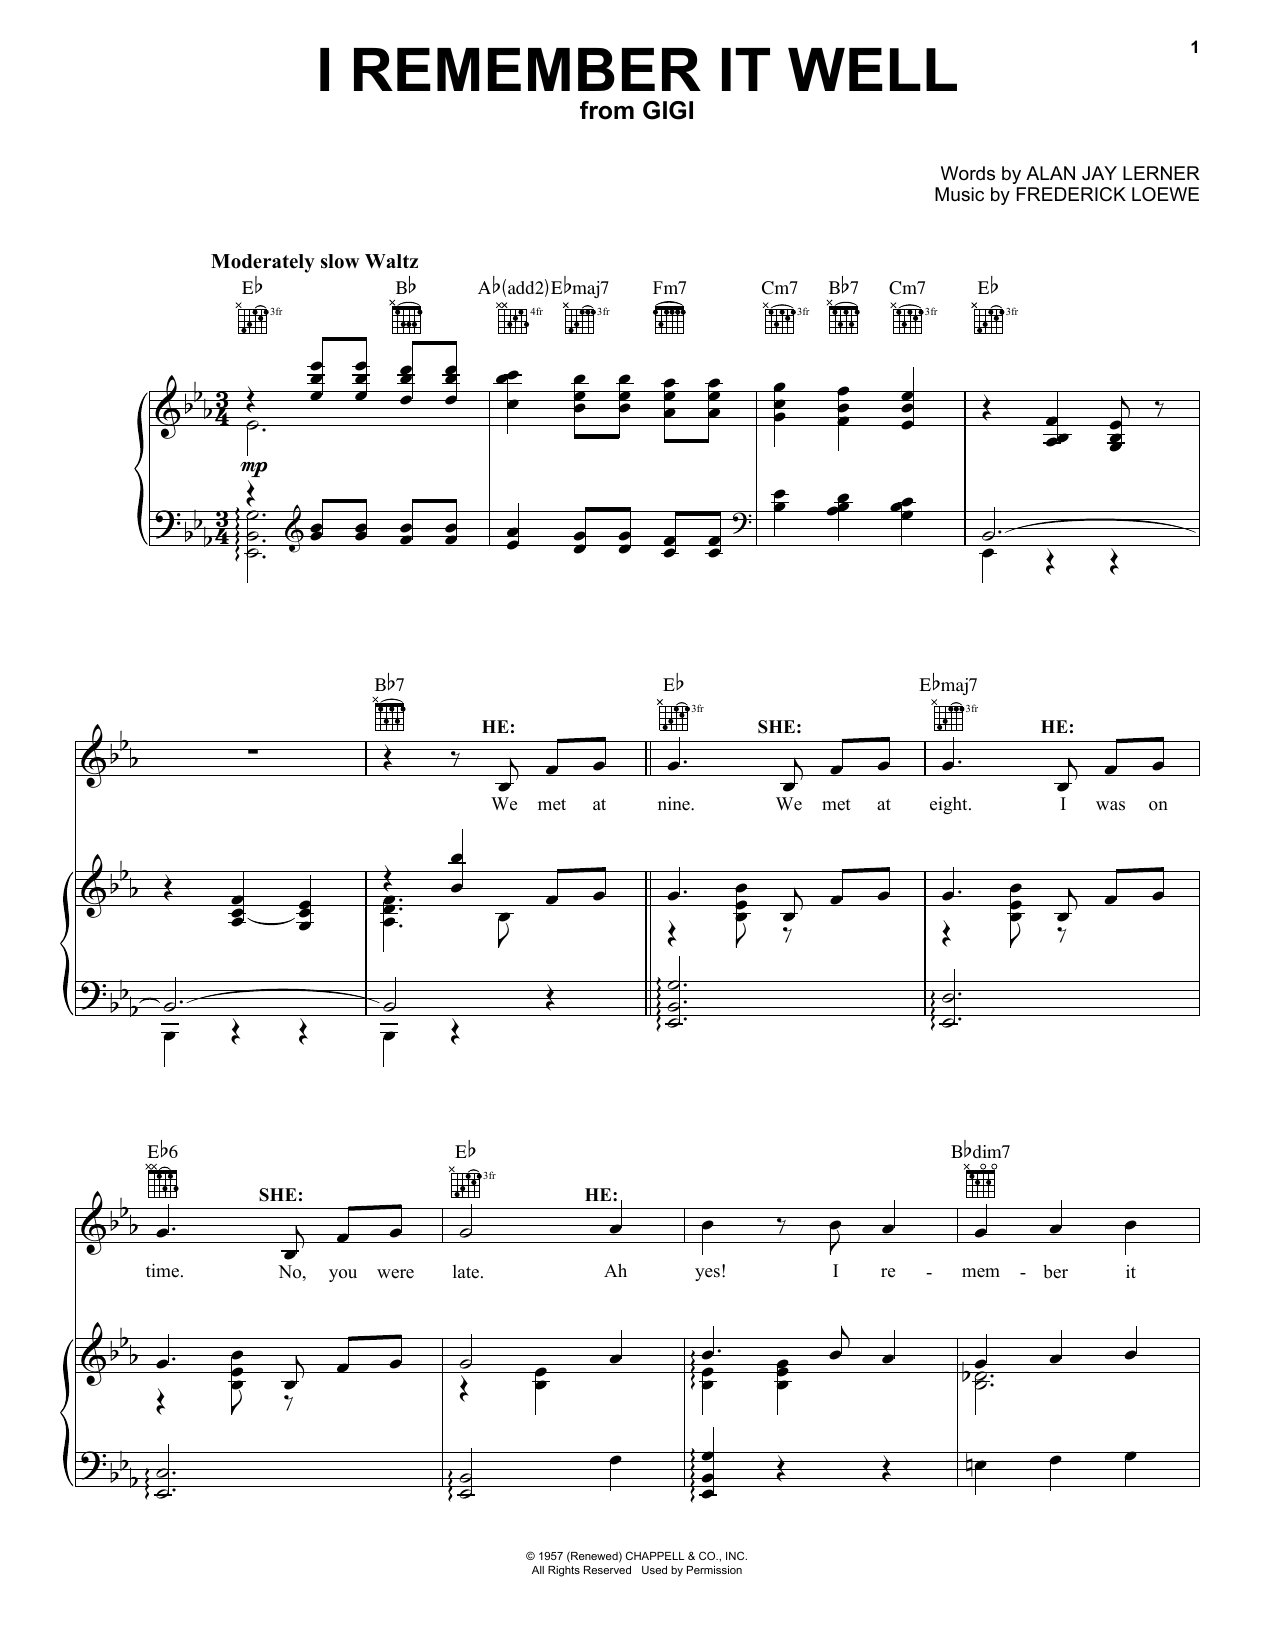 Lerner & Loewe I Remember It Well sheet music notes printable PDF score